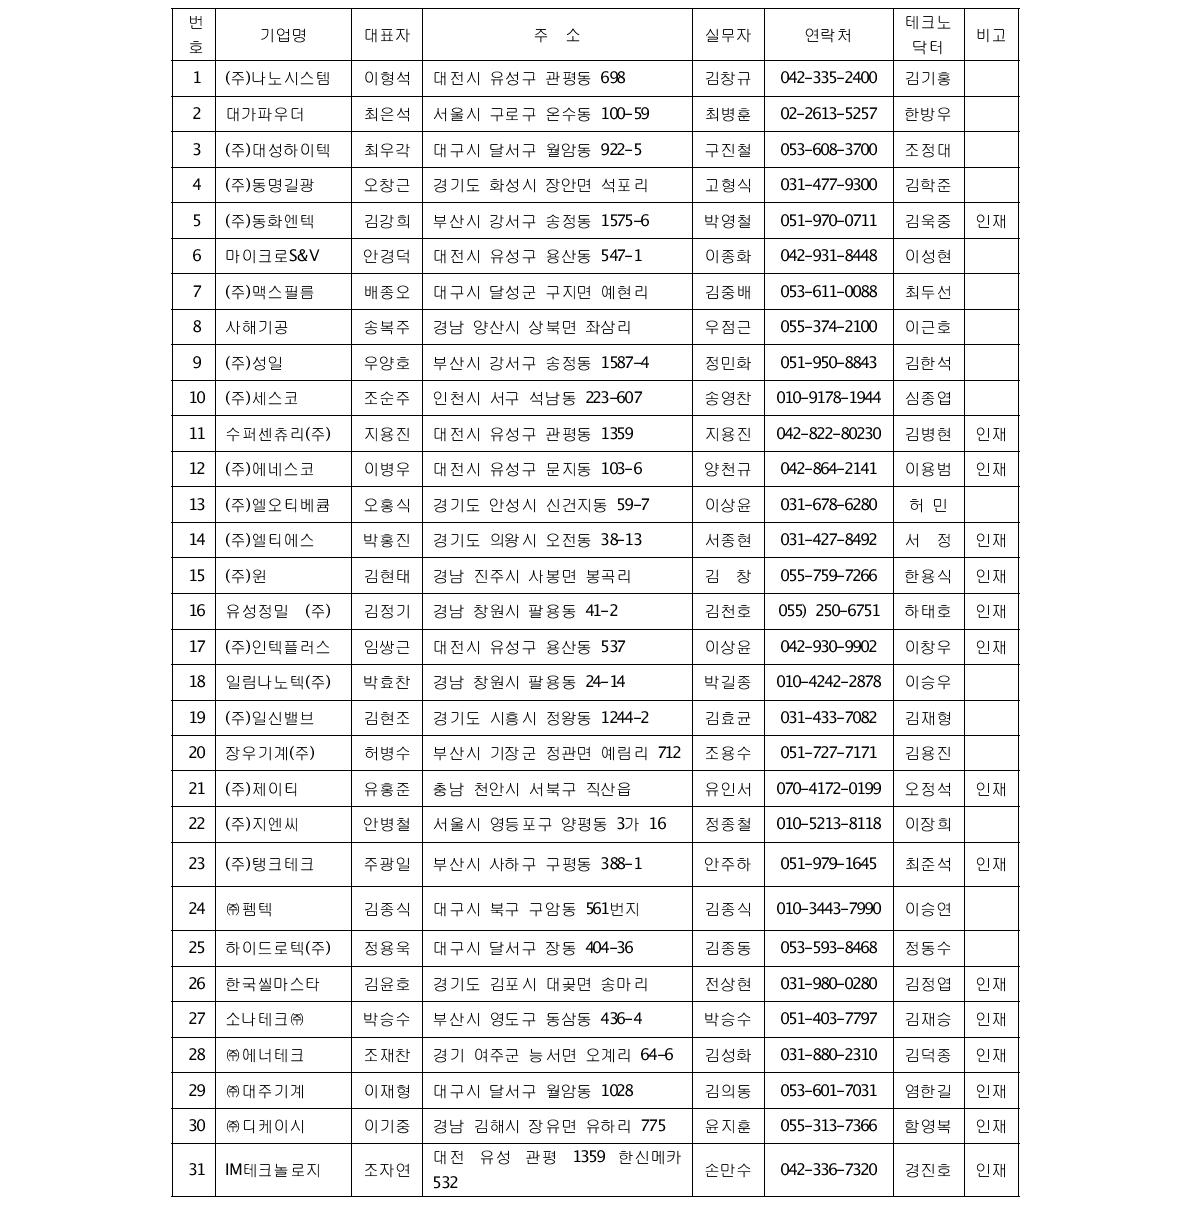 KIMM-Family 기업 및 테크노닥터 : 31개 기업(2012년도)